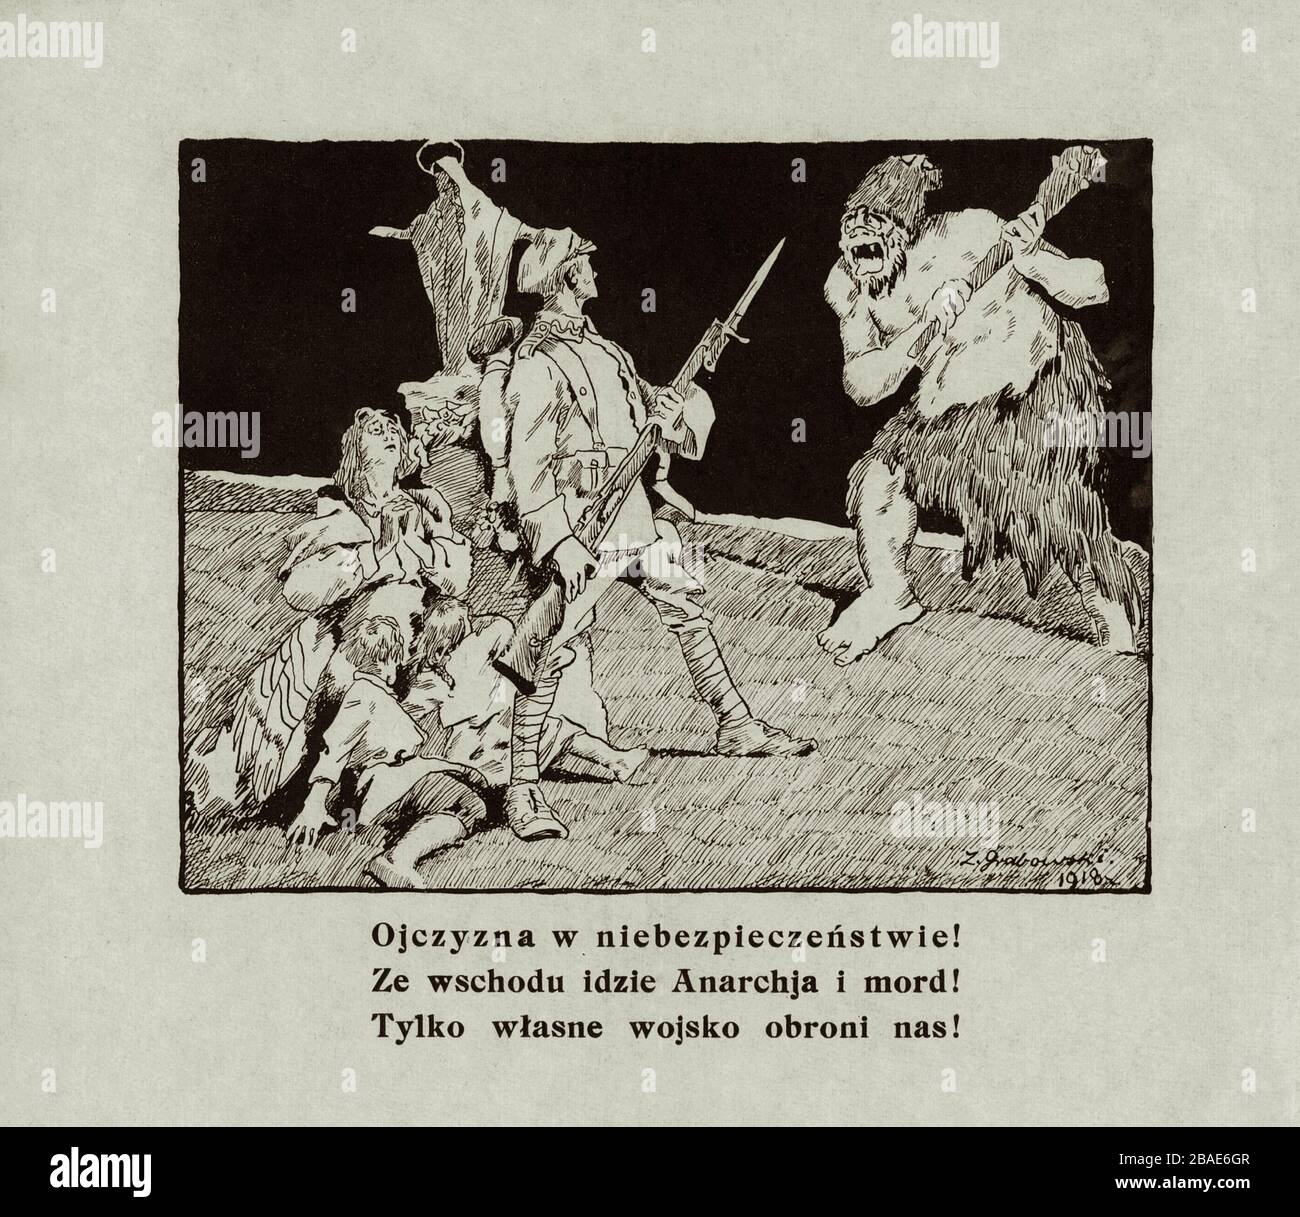 Polnisches Anti-Bolshivik-Propagandaplakat. Das Vaterland ist in Gefahr! Aus dem Osten kommt Anarchie und Mord! 1920 Stockfoto